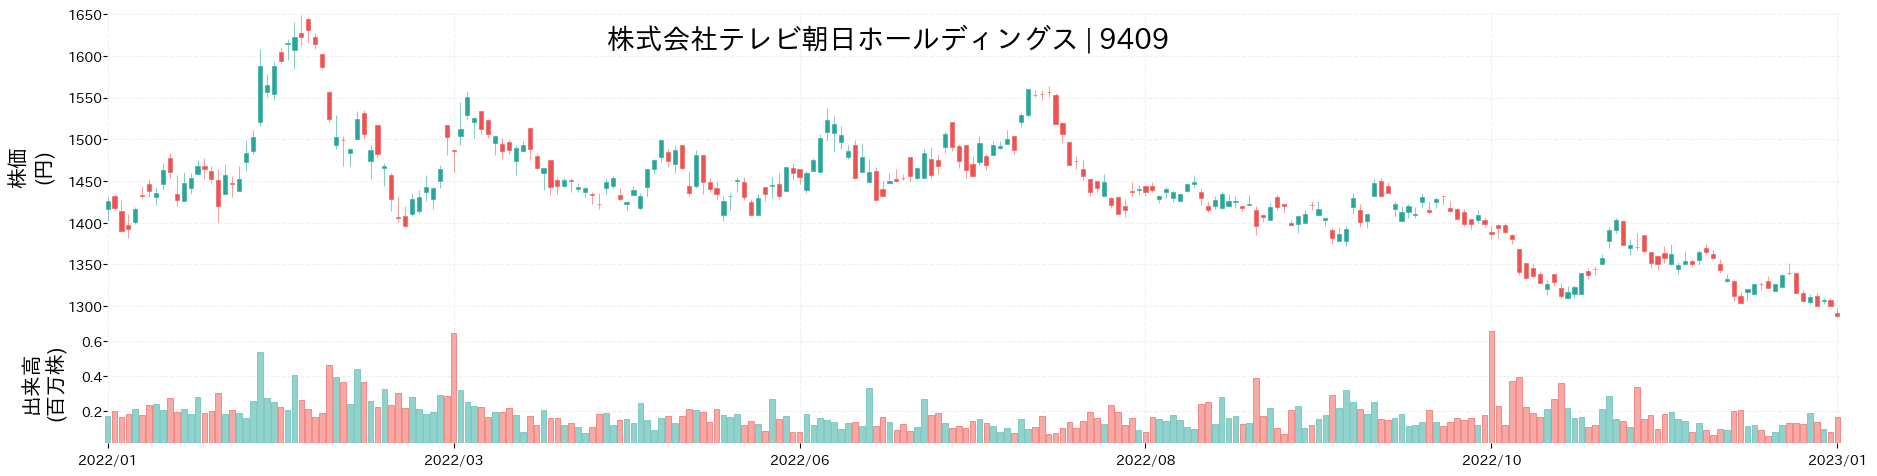 テレビ朝日ホールディングスの株価推移(2022)